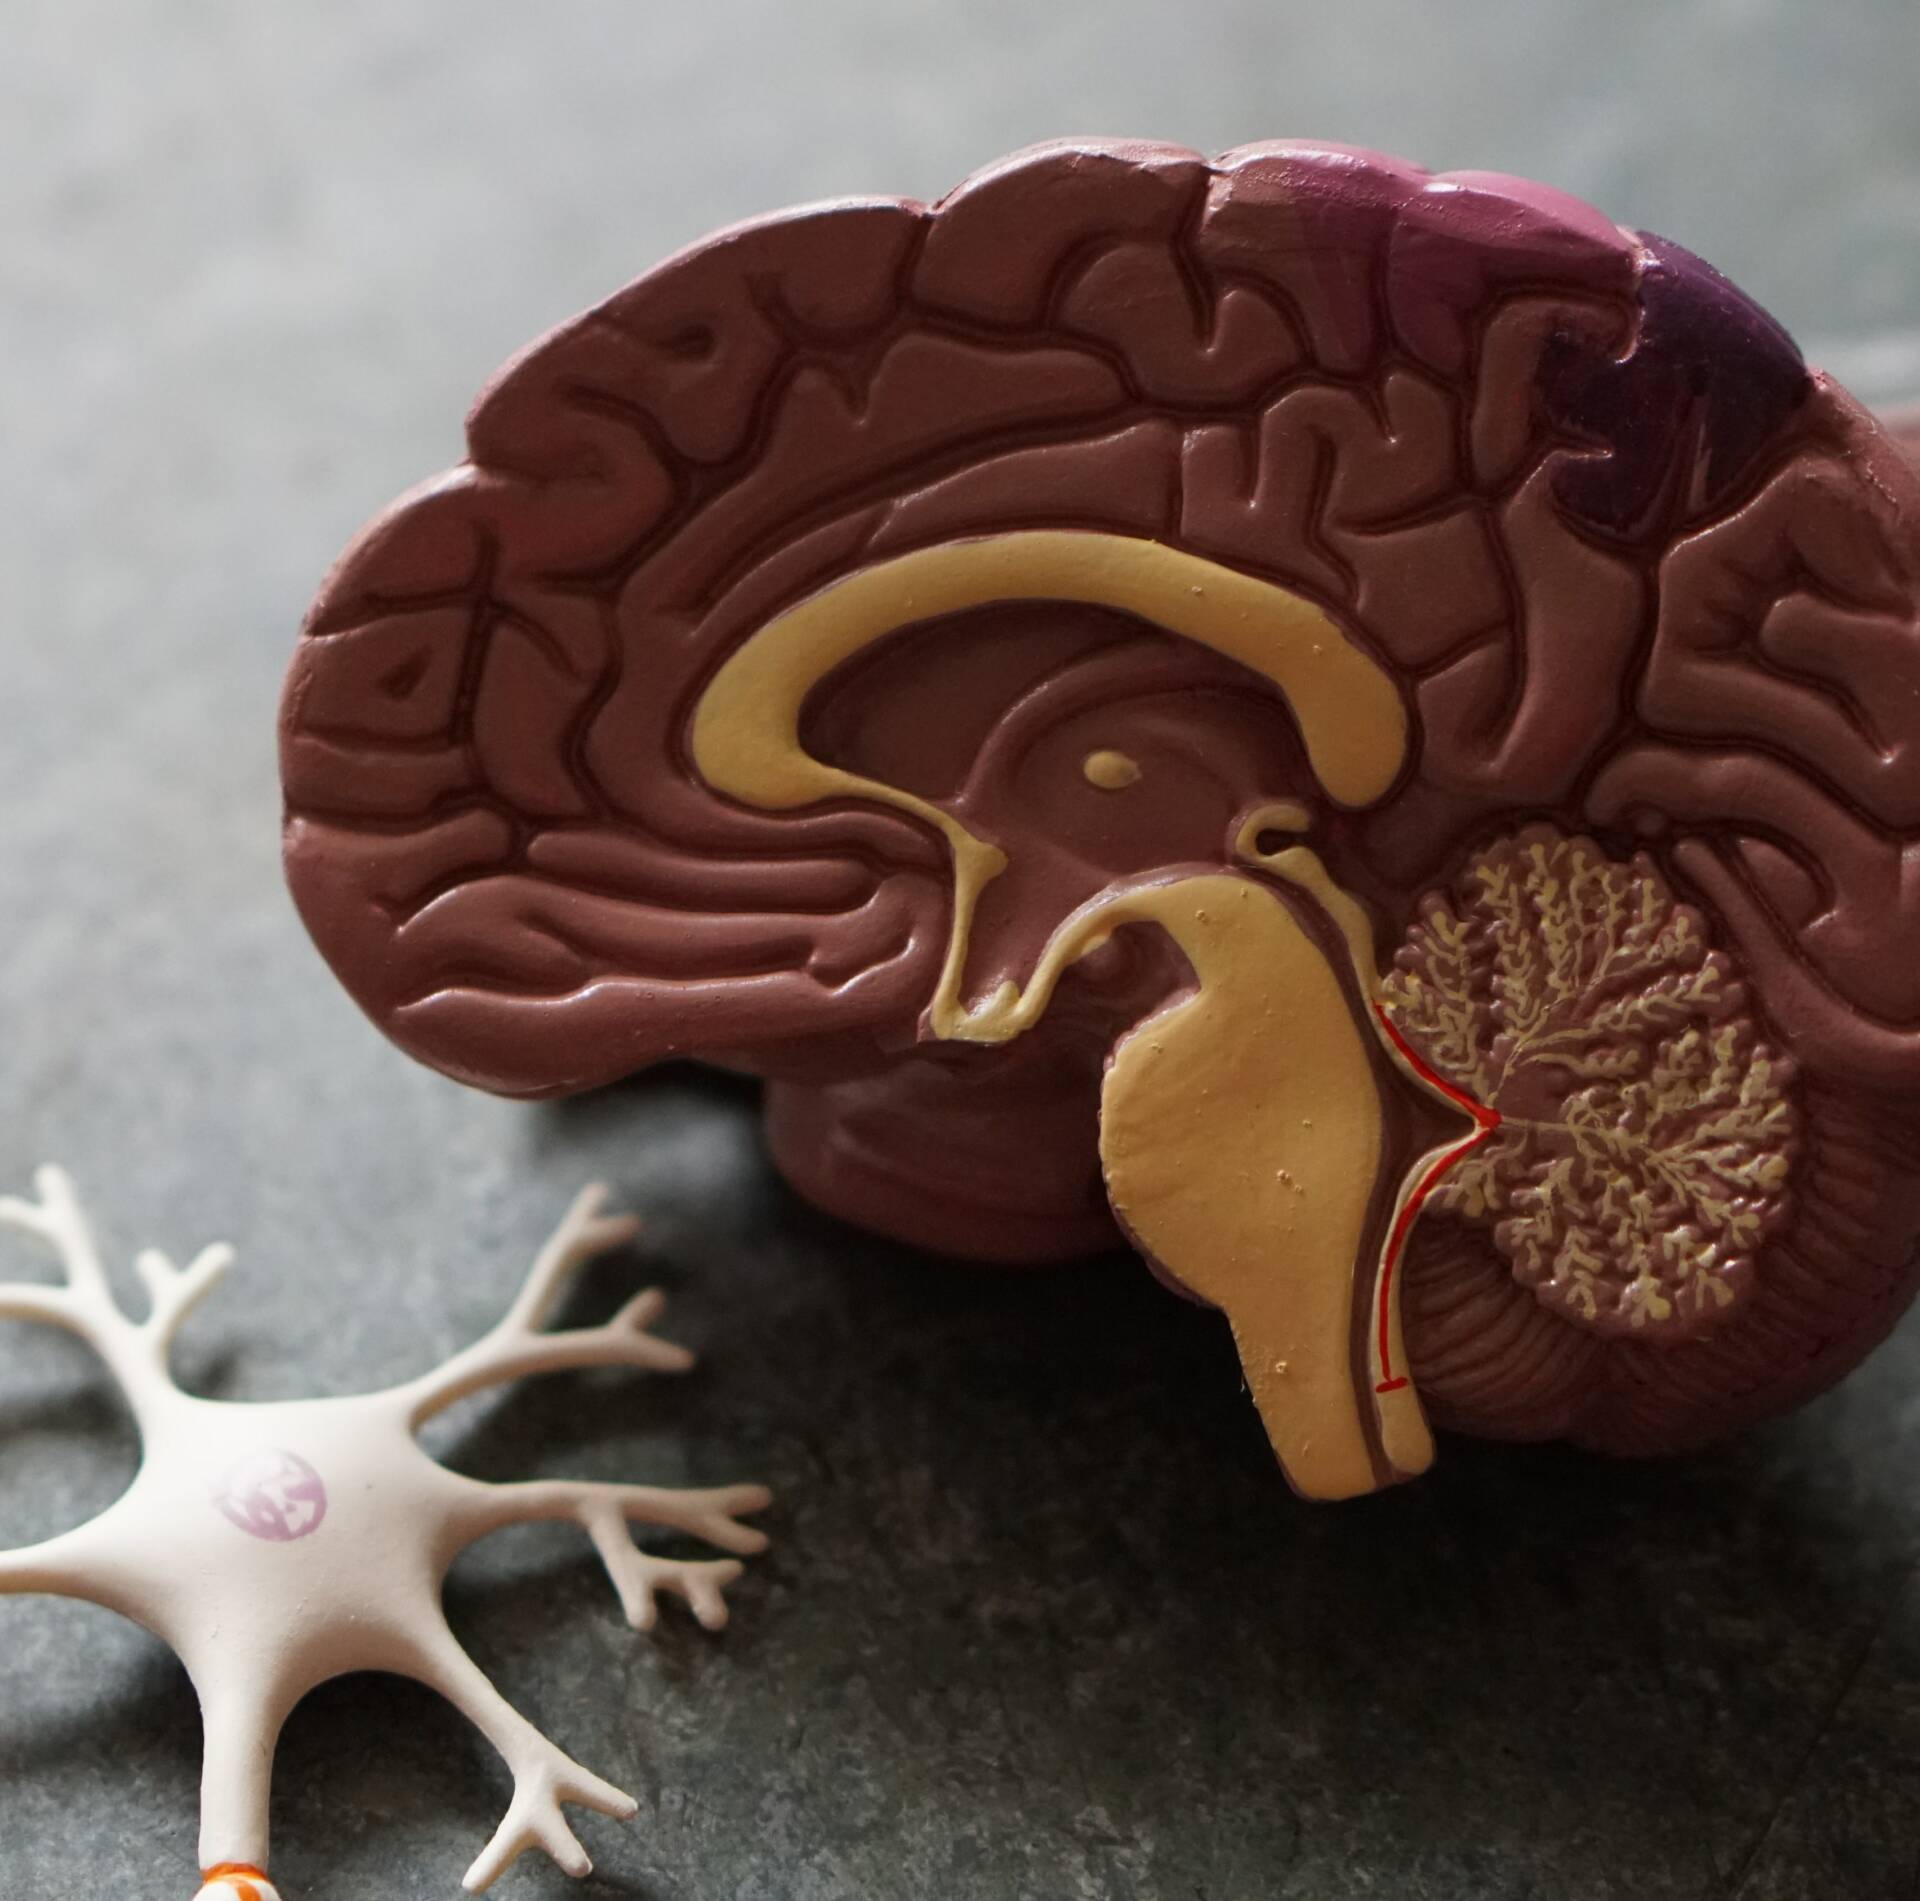 Model of a Brain